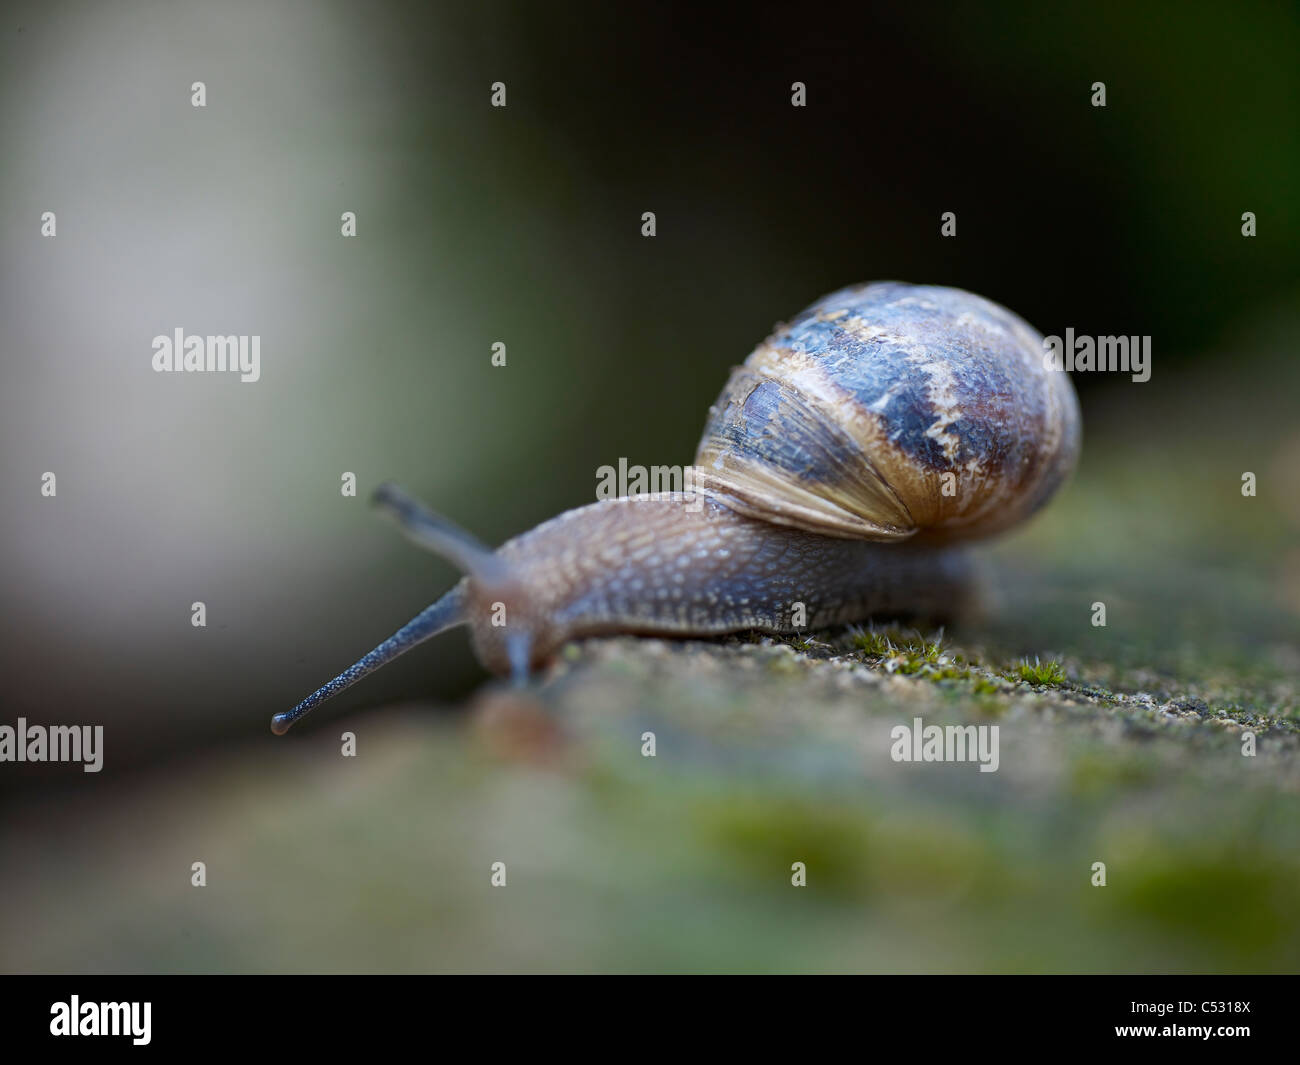 Snail scendendo da parete. Foto Stock